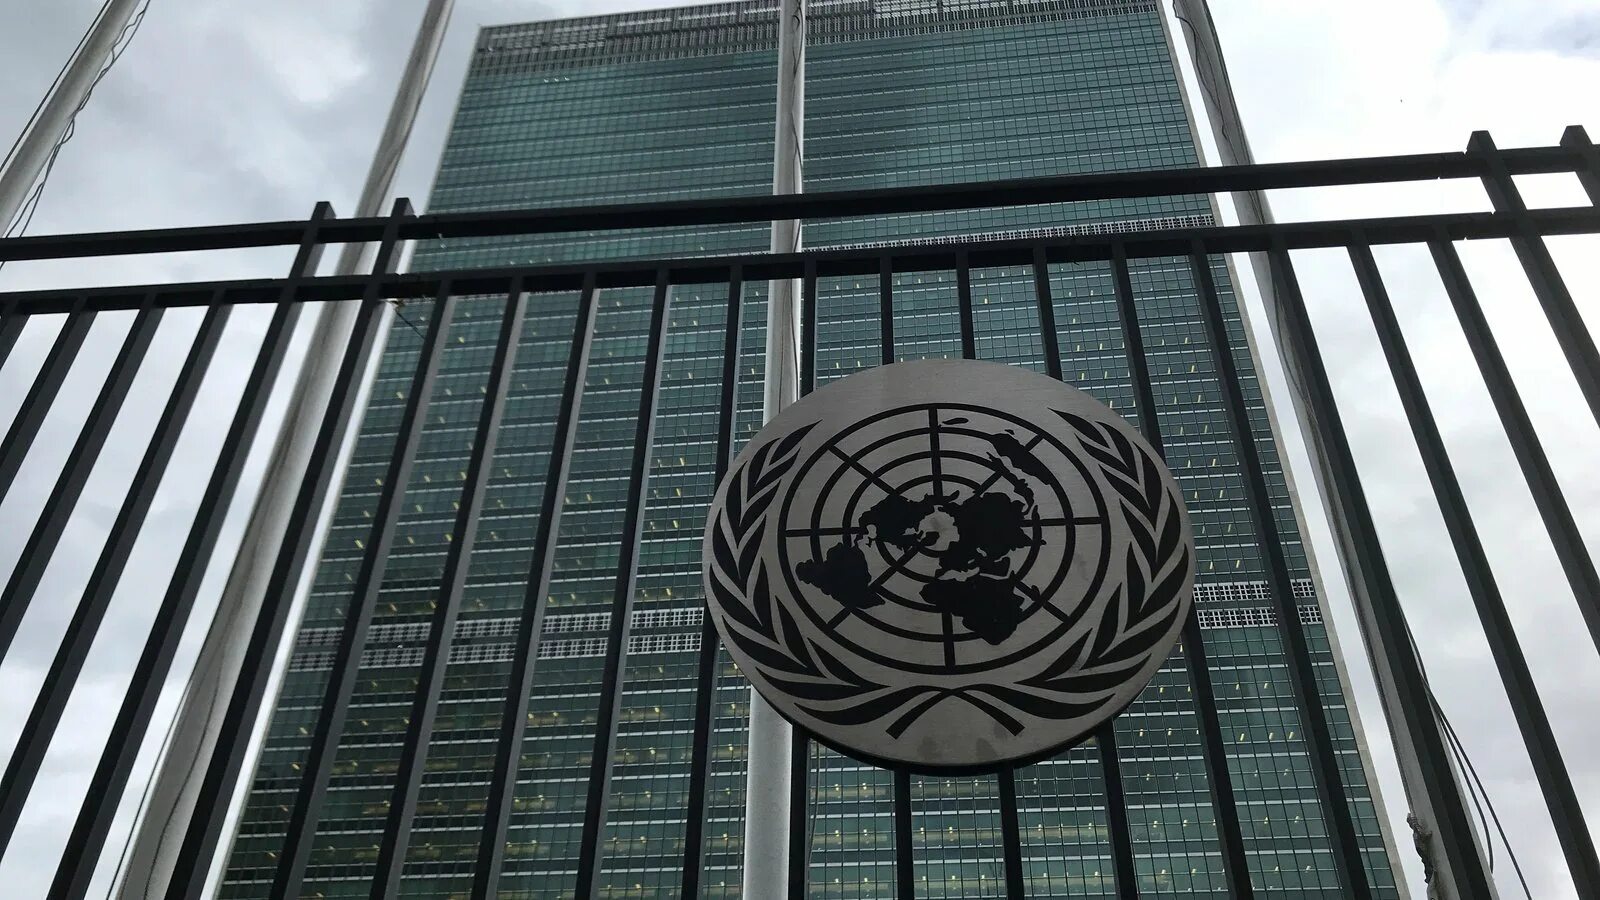 Офис оон. Генеральная Ассамблея ООН Нью-Йорк. Здание Генеральной Ассамблеи ООН В Нью-Йорке. Генассамблея ООН здание. Зал ООН В Нью-Йорке.